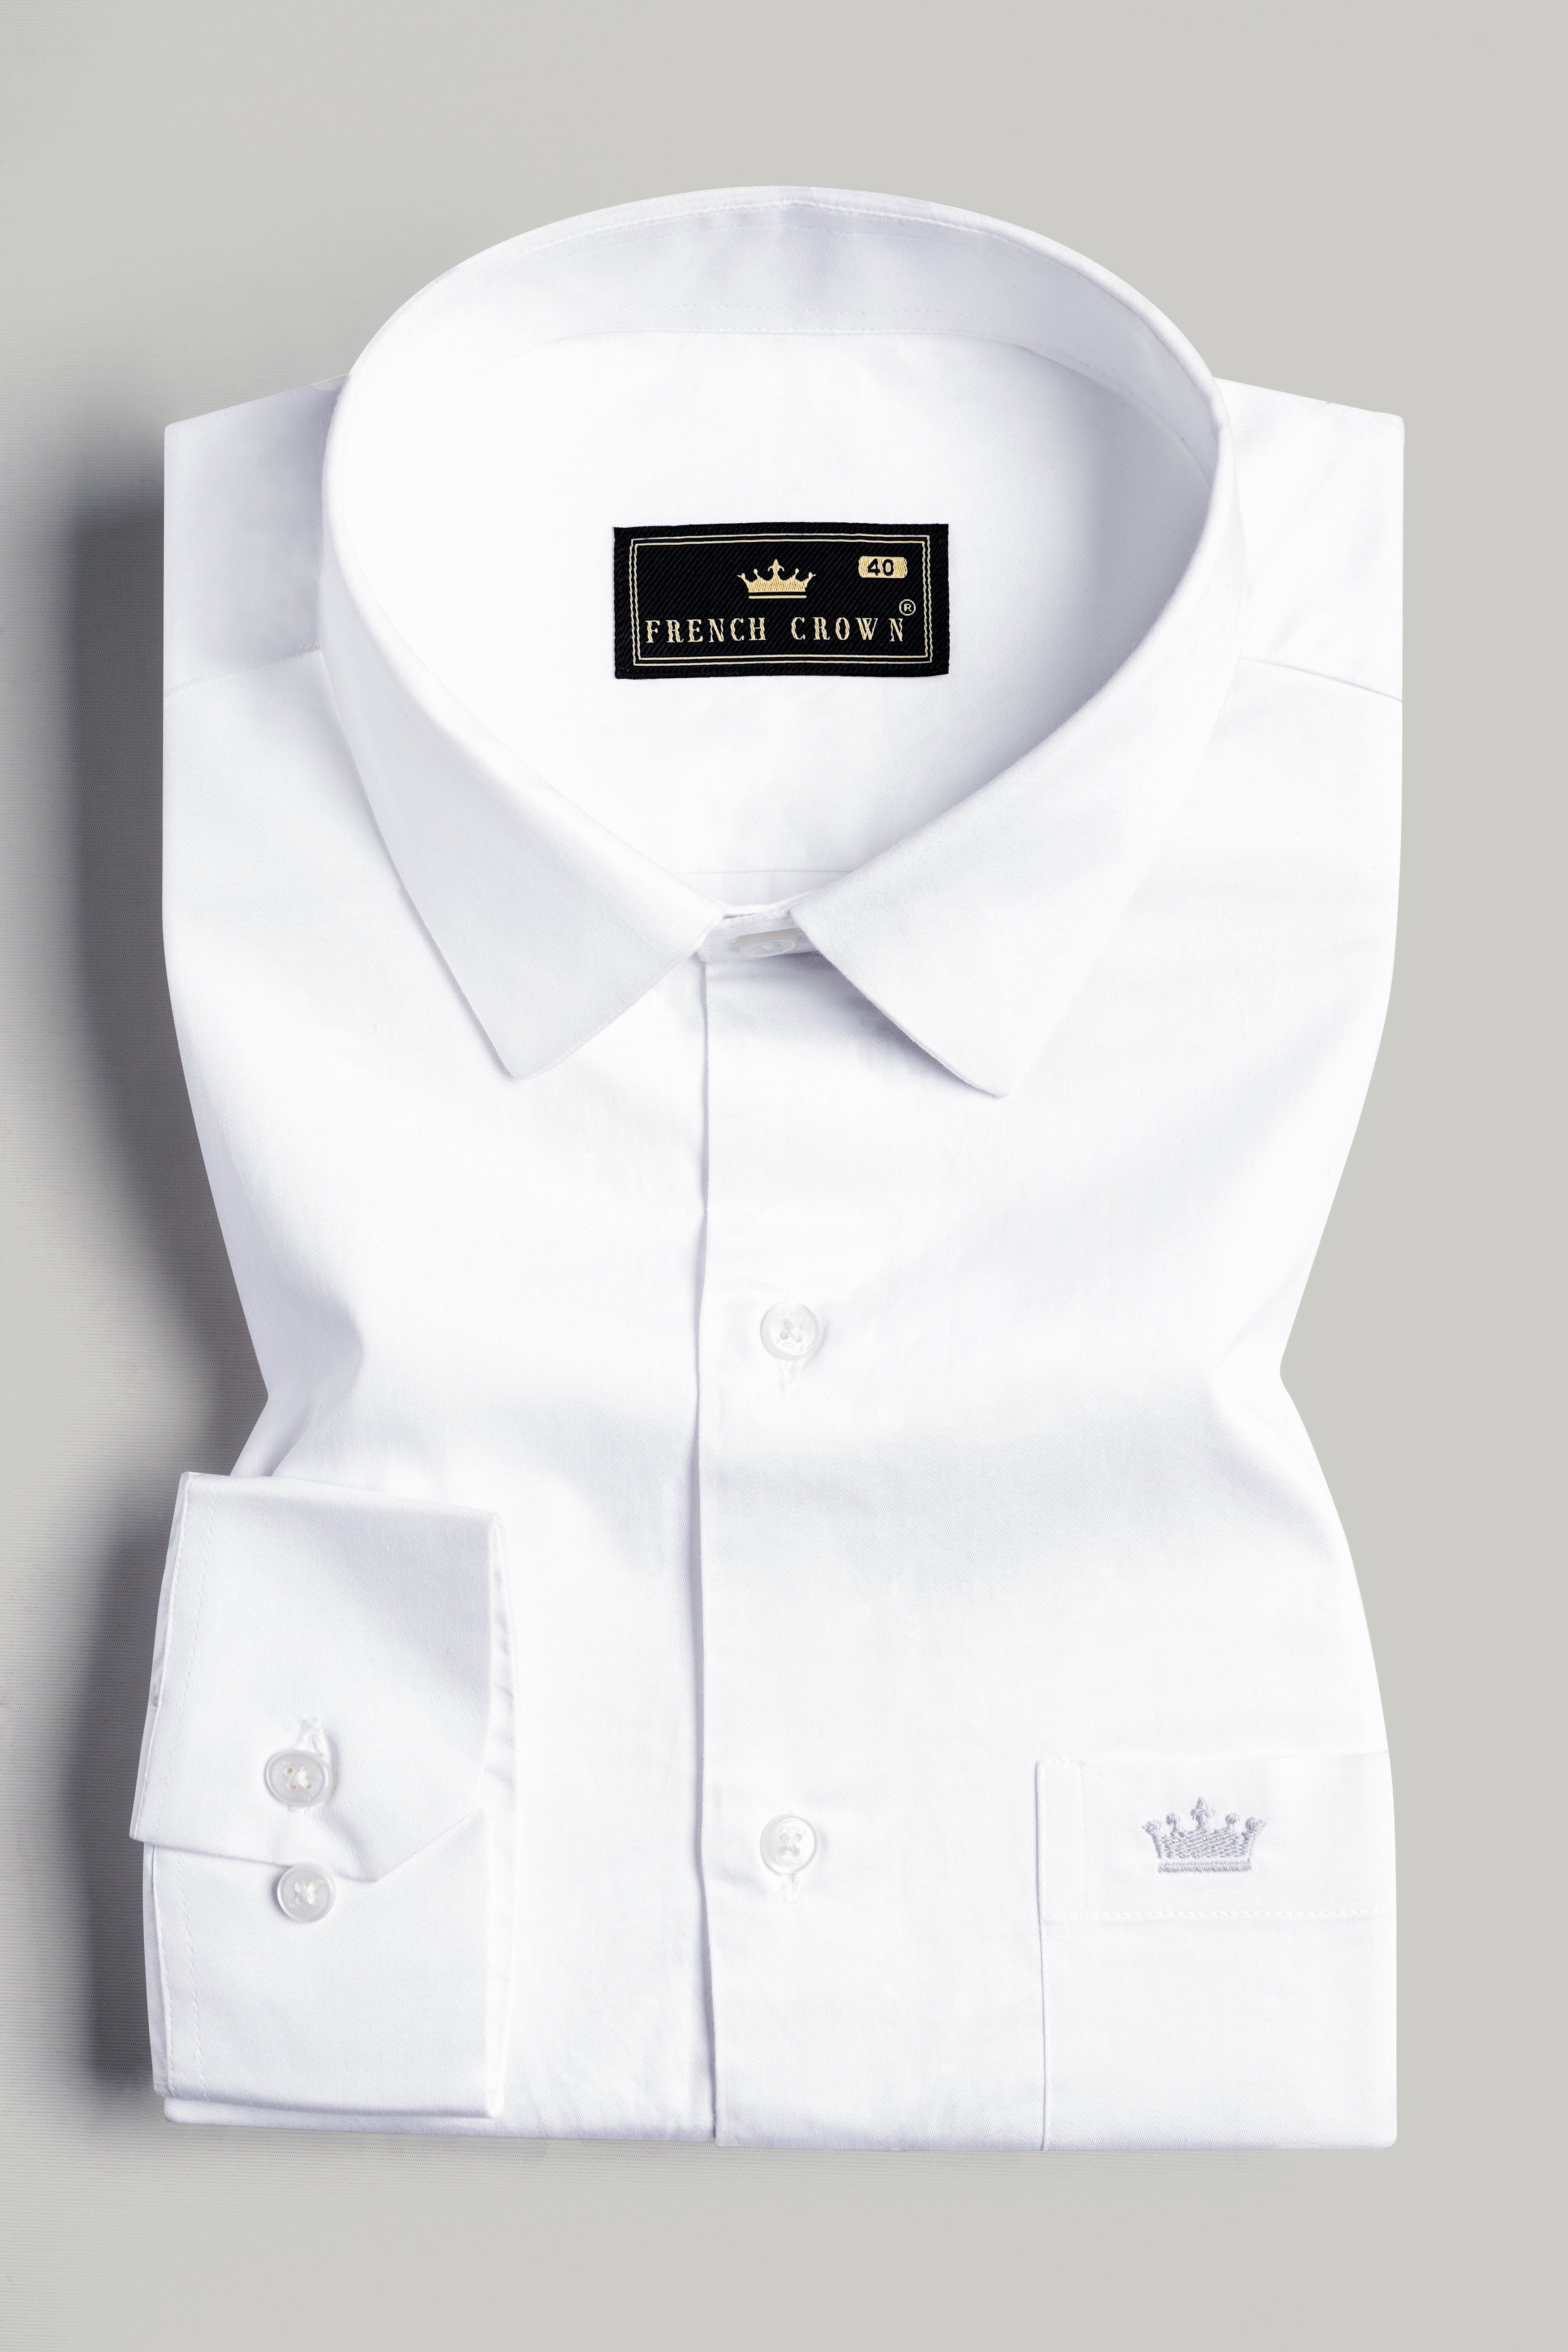 Bright White Premium Cotton Shirt 1575-38, 1575-H-38, 1575-39, 1575-H-39, 1575-40, 1575-H-40, 1575-42, 1575-H-42, 1575-44, 1575-H-44, 1575-46, 1575-H-46, 1575-48, 1575-H-48, 1575-50, 1575-H-50, 1575-52, 1575-H-52